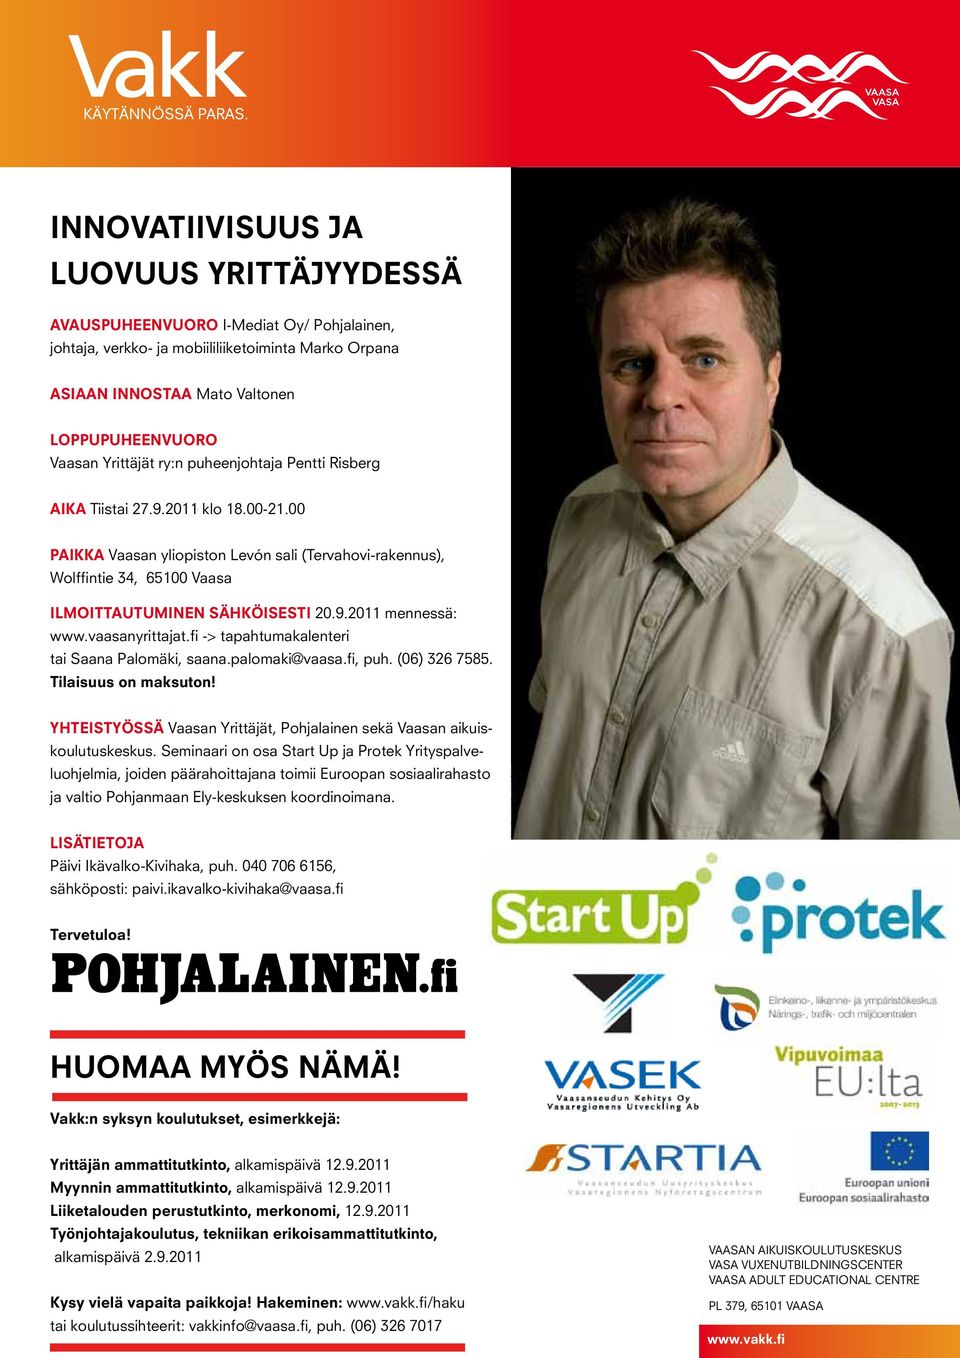 9.2011 mennessä: www.vaasanyrittajat.fi -> tapahtumakalenteri tai Saana Palomäki, saana.palomaki@vaasa.fi, puh. (06) 326 7585. tilaisuus on maksuton!